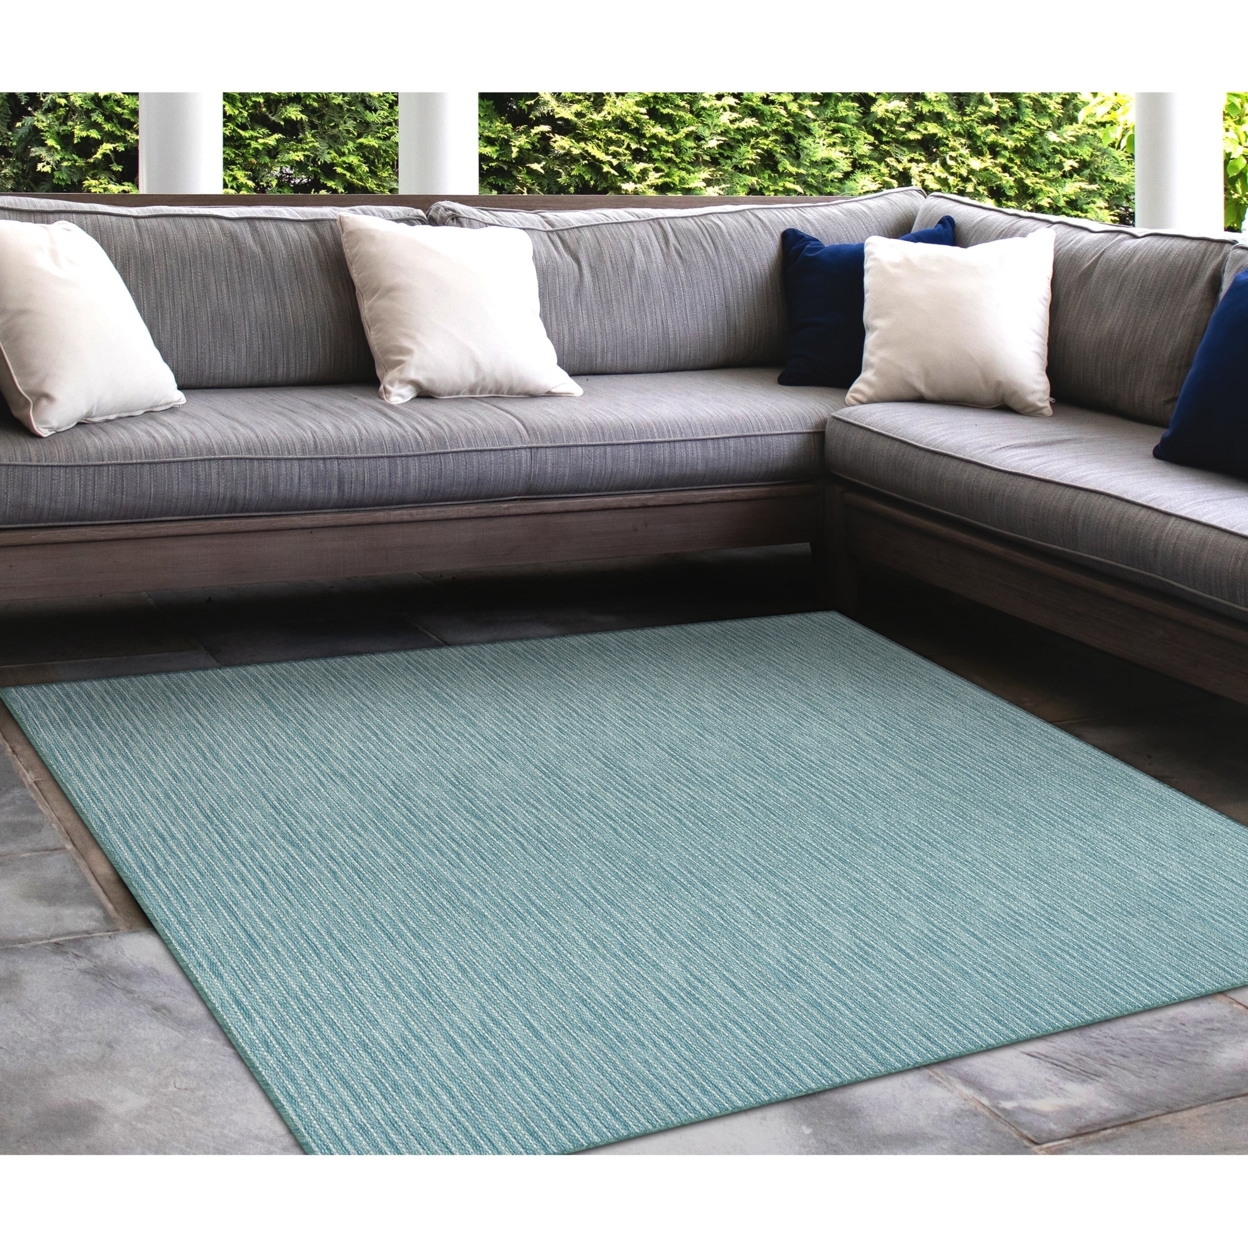 Liora Manne Carmel Texture Stripe Indoor Outdoor Area Rug Aqua - 7'10 X 9'10